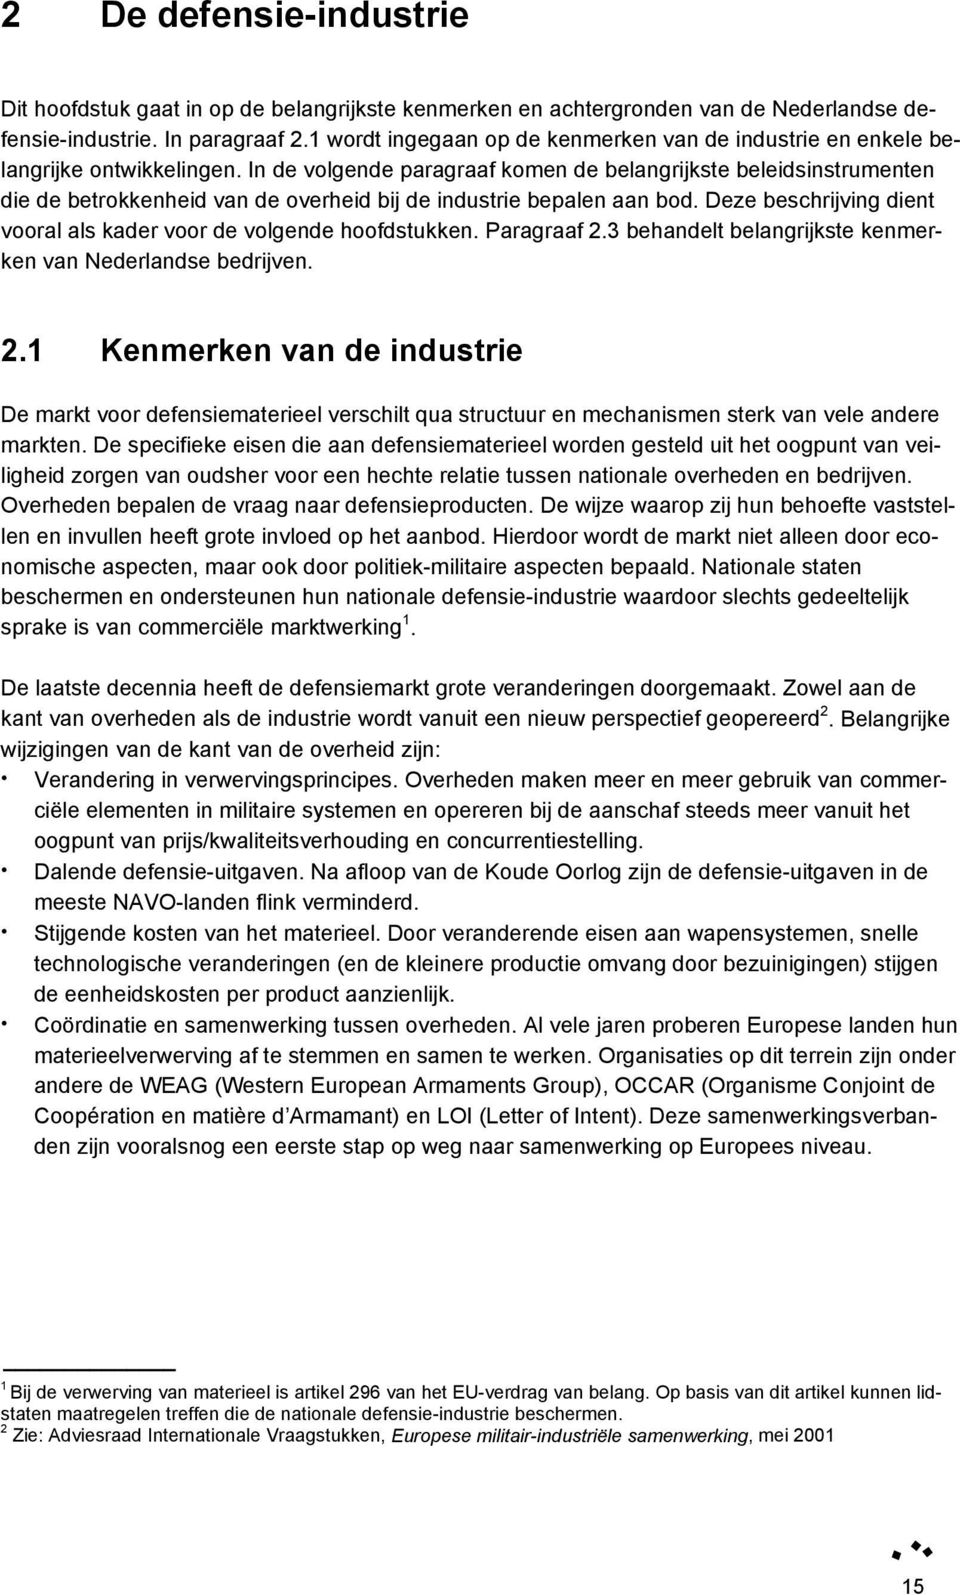 In de volgende paragraaf komen de belangrijkste beleidsinstrumenten die de betrokkenheid van de overheid bij de industrie bepalen aan bod.